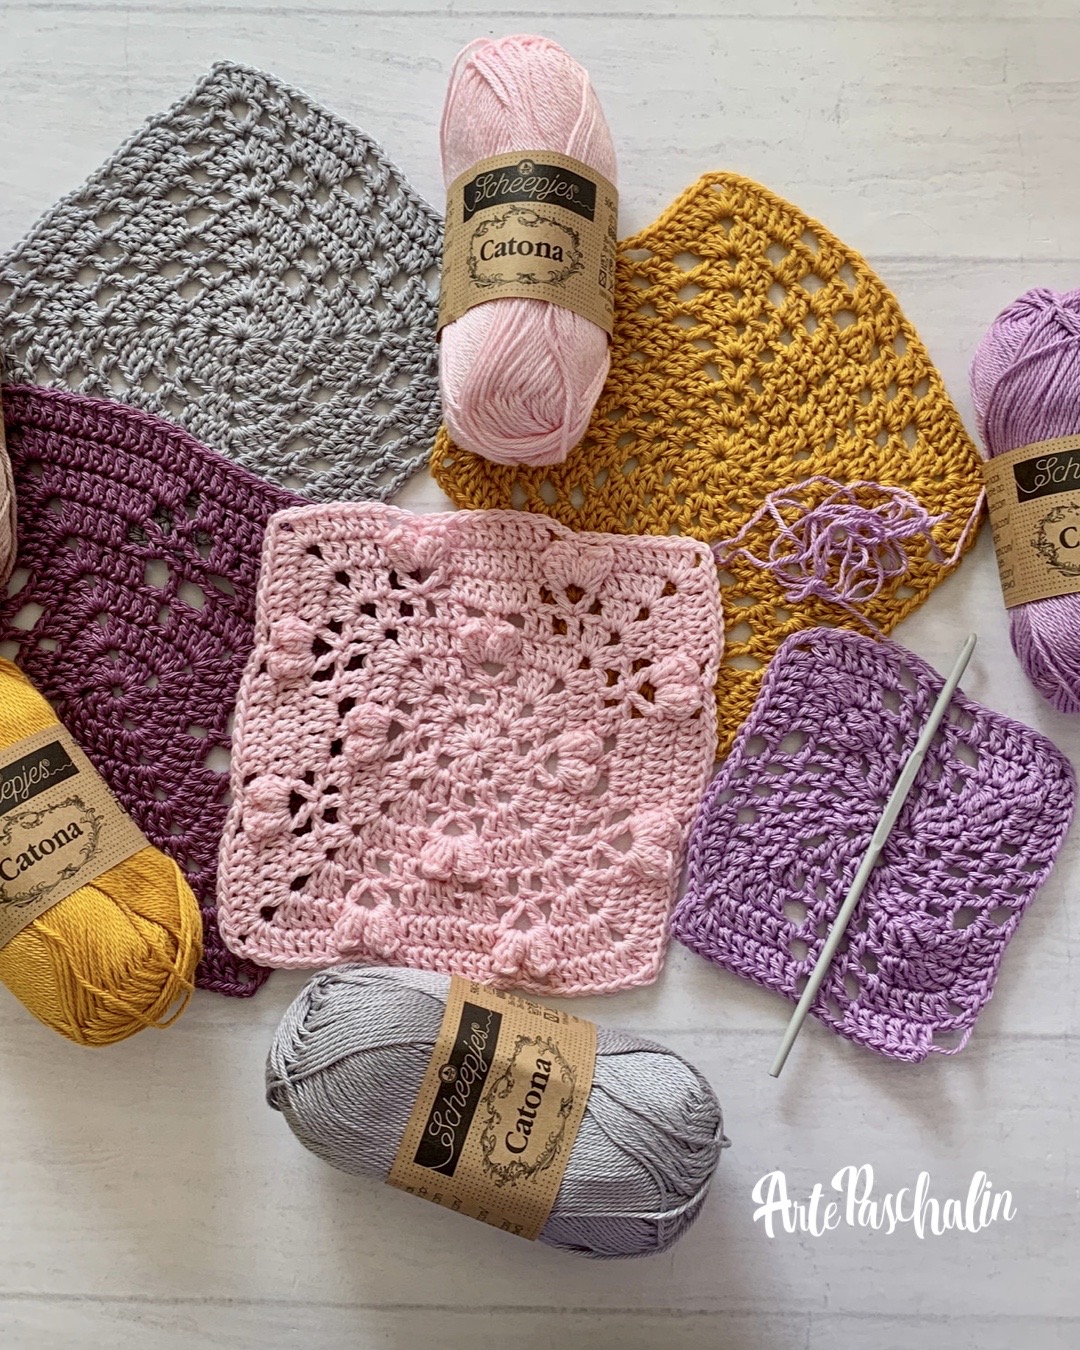 fantasma Raza humana tela Blog: Tips para tejer mantas a crochet parte 1 – Arte Paschalin